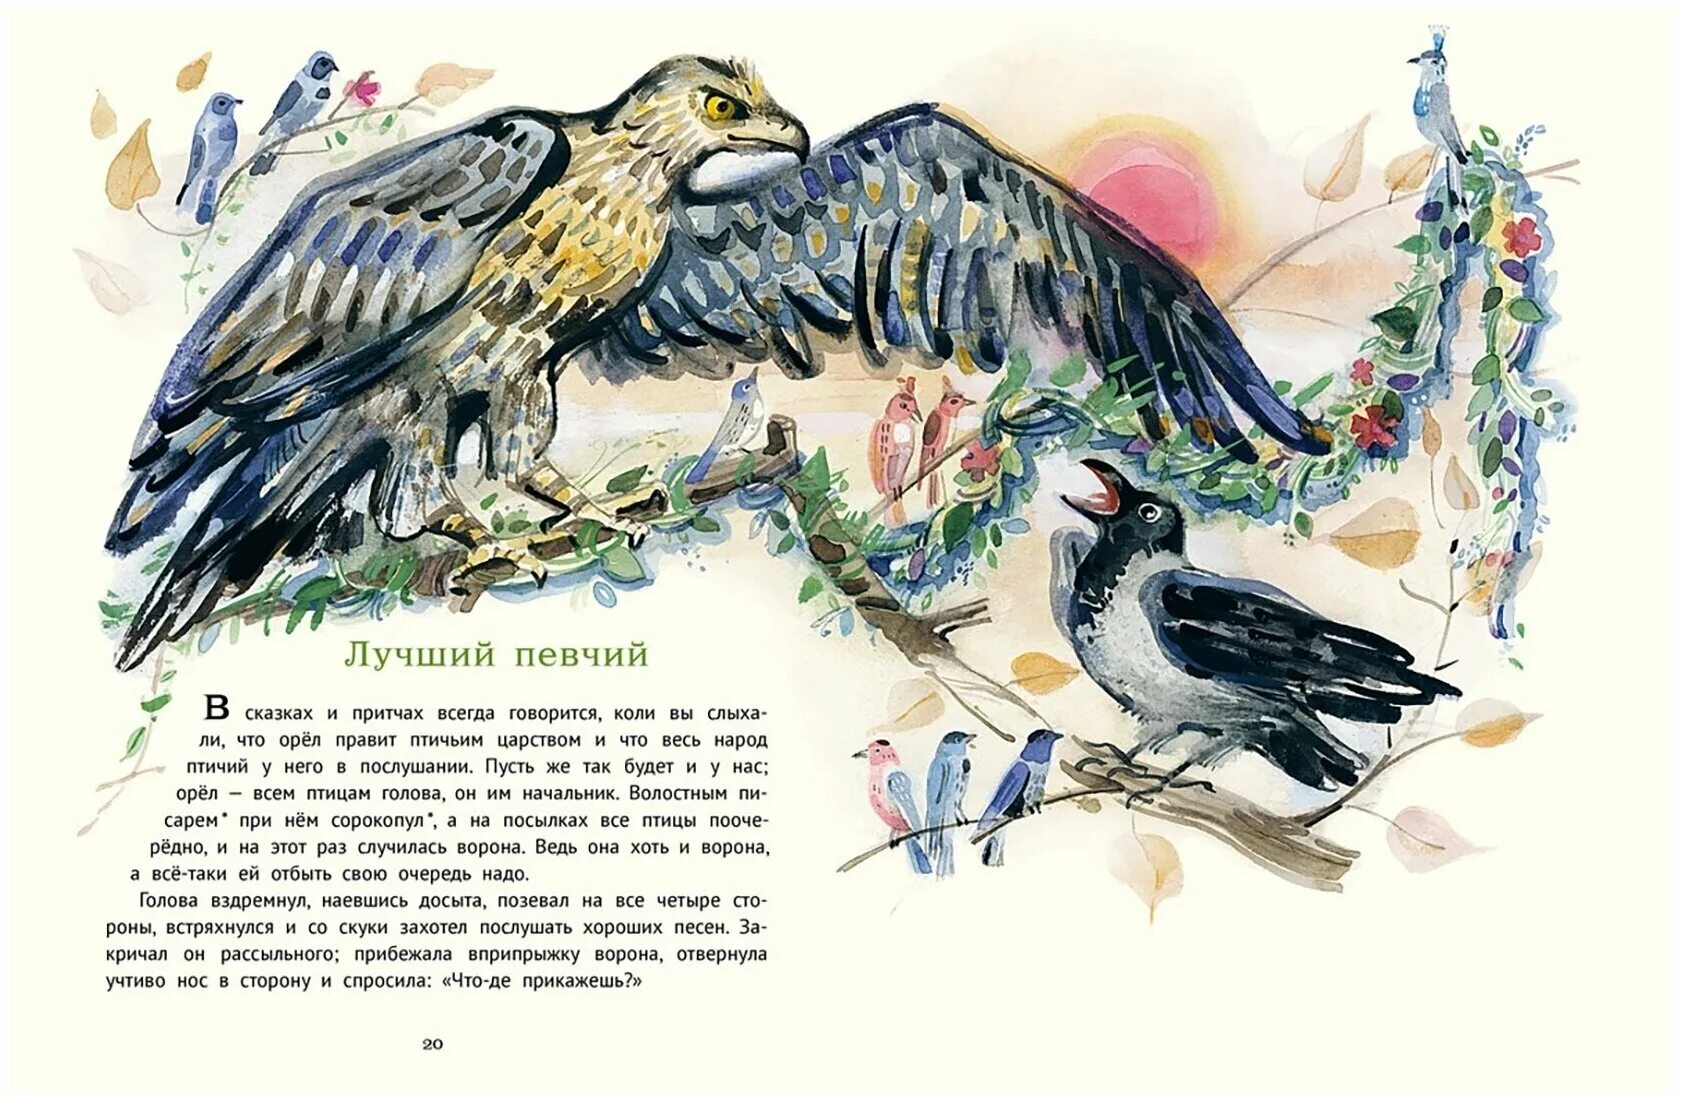 Сказка про птицу человека. Иллюстрации к сказке ворона Даля. Ворона сказка. Вороны иллюстрации сказочные.